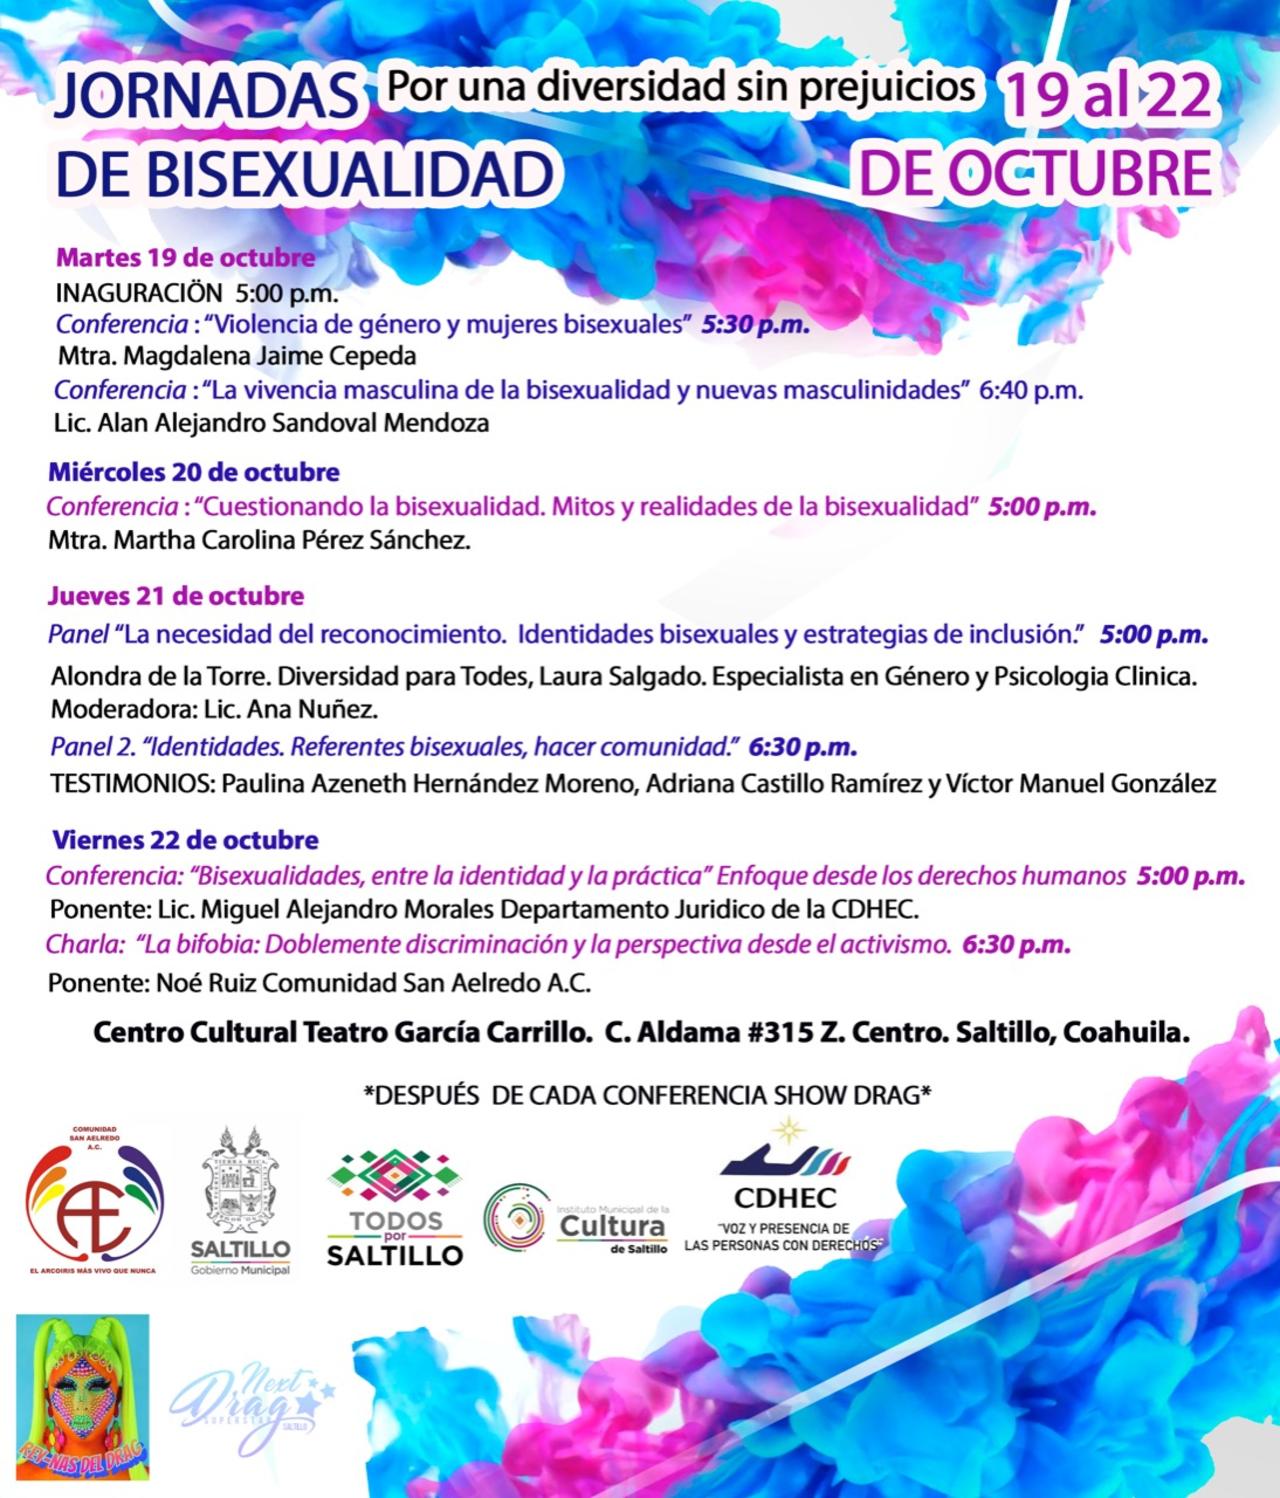 Esta actividad, la cual lleva por nombre, la 'Jornada de bisexualidad, una diversidad sin prejuicios', se desarrollará del 19 al 22 de octubre en las instalaciones del Centro Cultural Teatro García Carrillo en la zona centro de Saltillo.